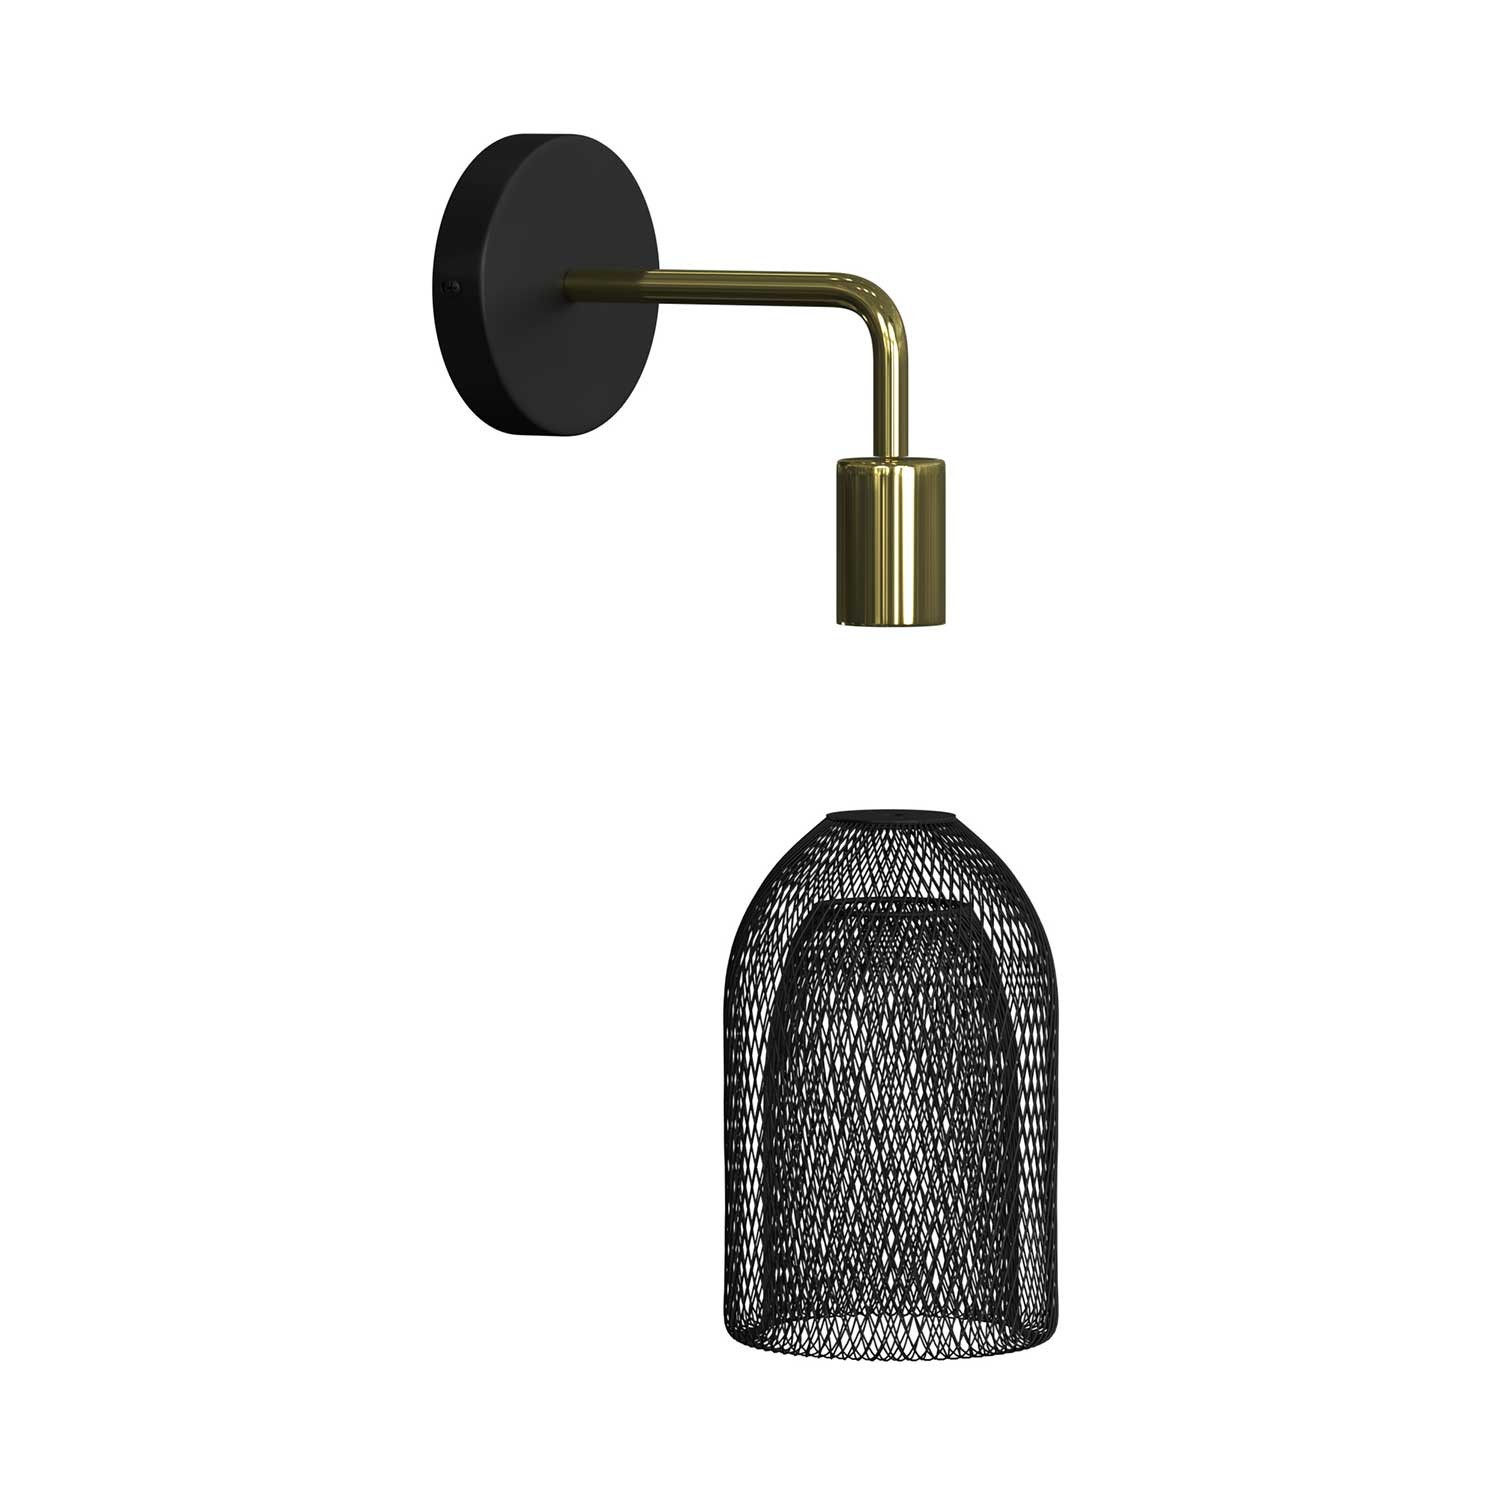 Vägglampa i metall med Ghostbell lampskärm, vägglampa i metall med böjd förlängning